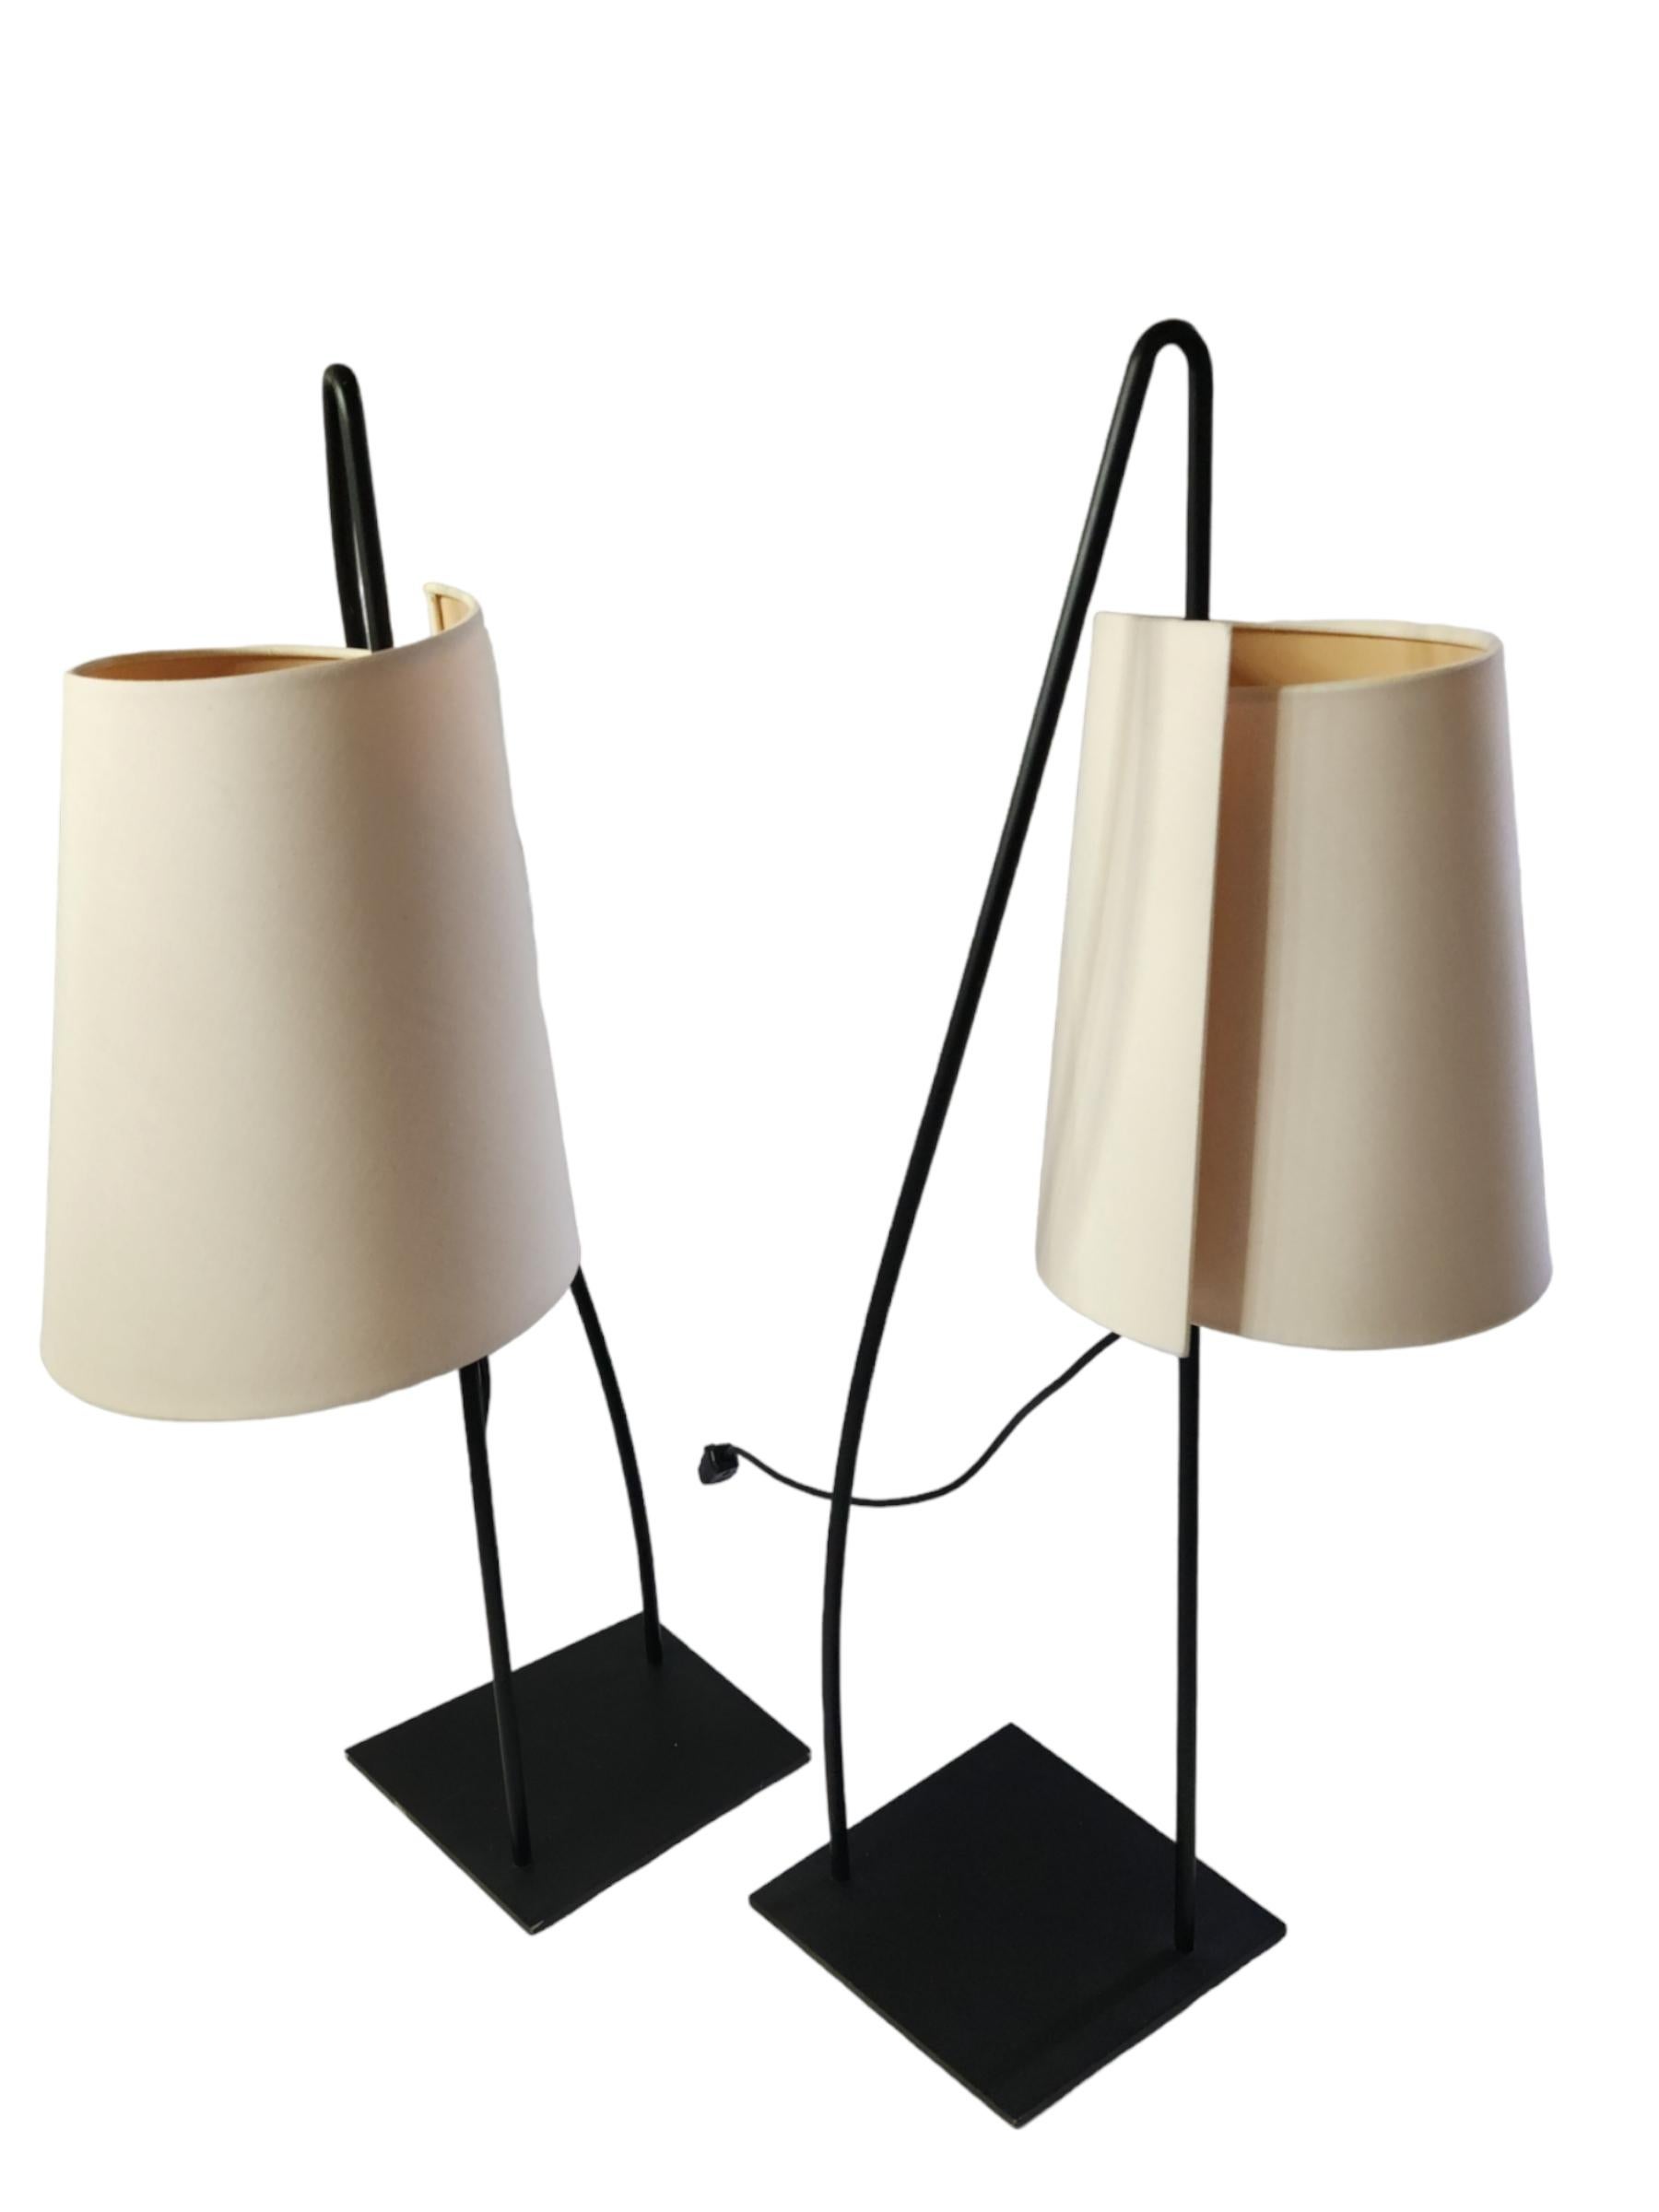 Ein Paar italienische skulpturale Tischlampen von Italiana Luce, hergestellt in Italien, ca. 1980er Jahre.
Die schwarz lackierten Grundplatten sind leicht trapezförmig und tragen eine geschwungene, schwarz lackierte Metallschlaufe.
Die gegossenen